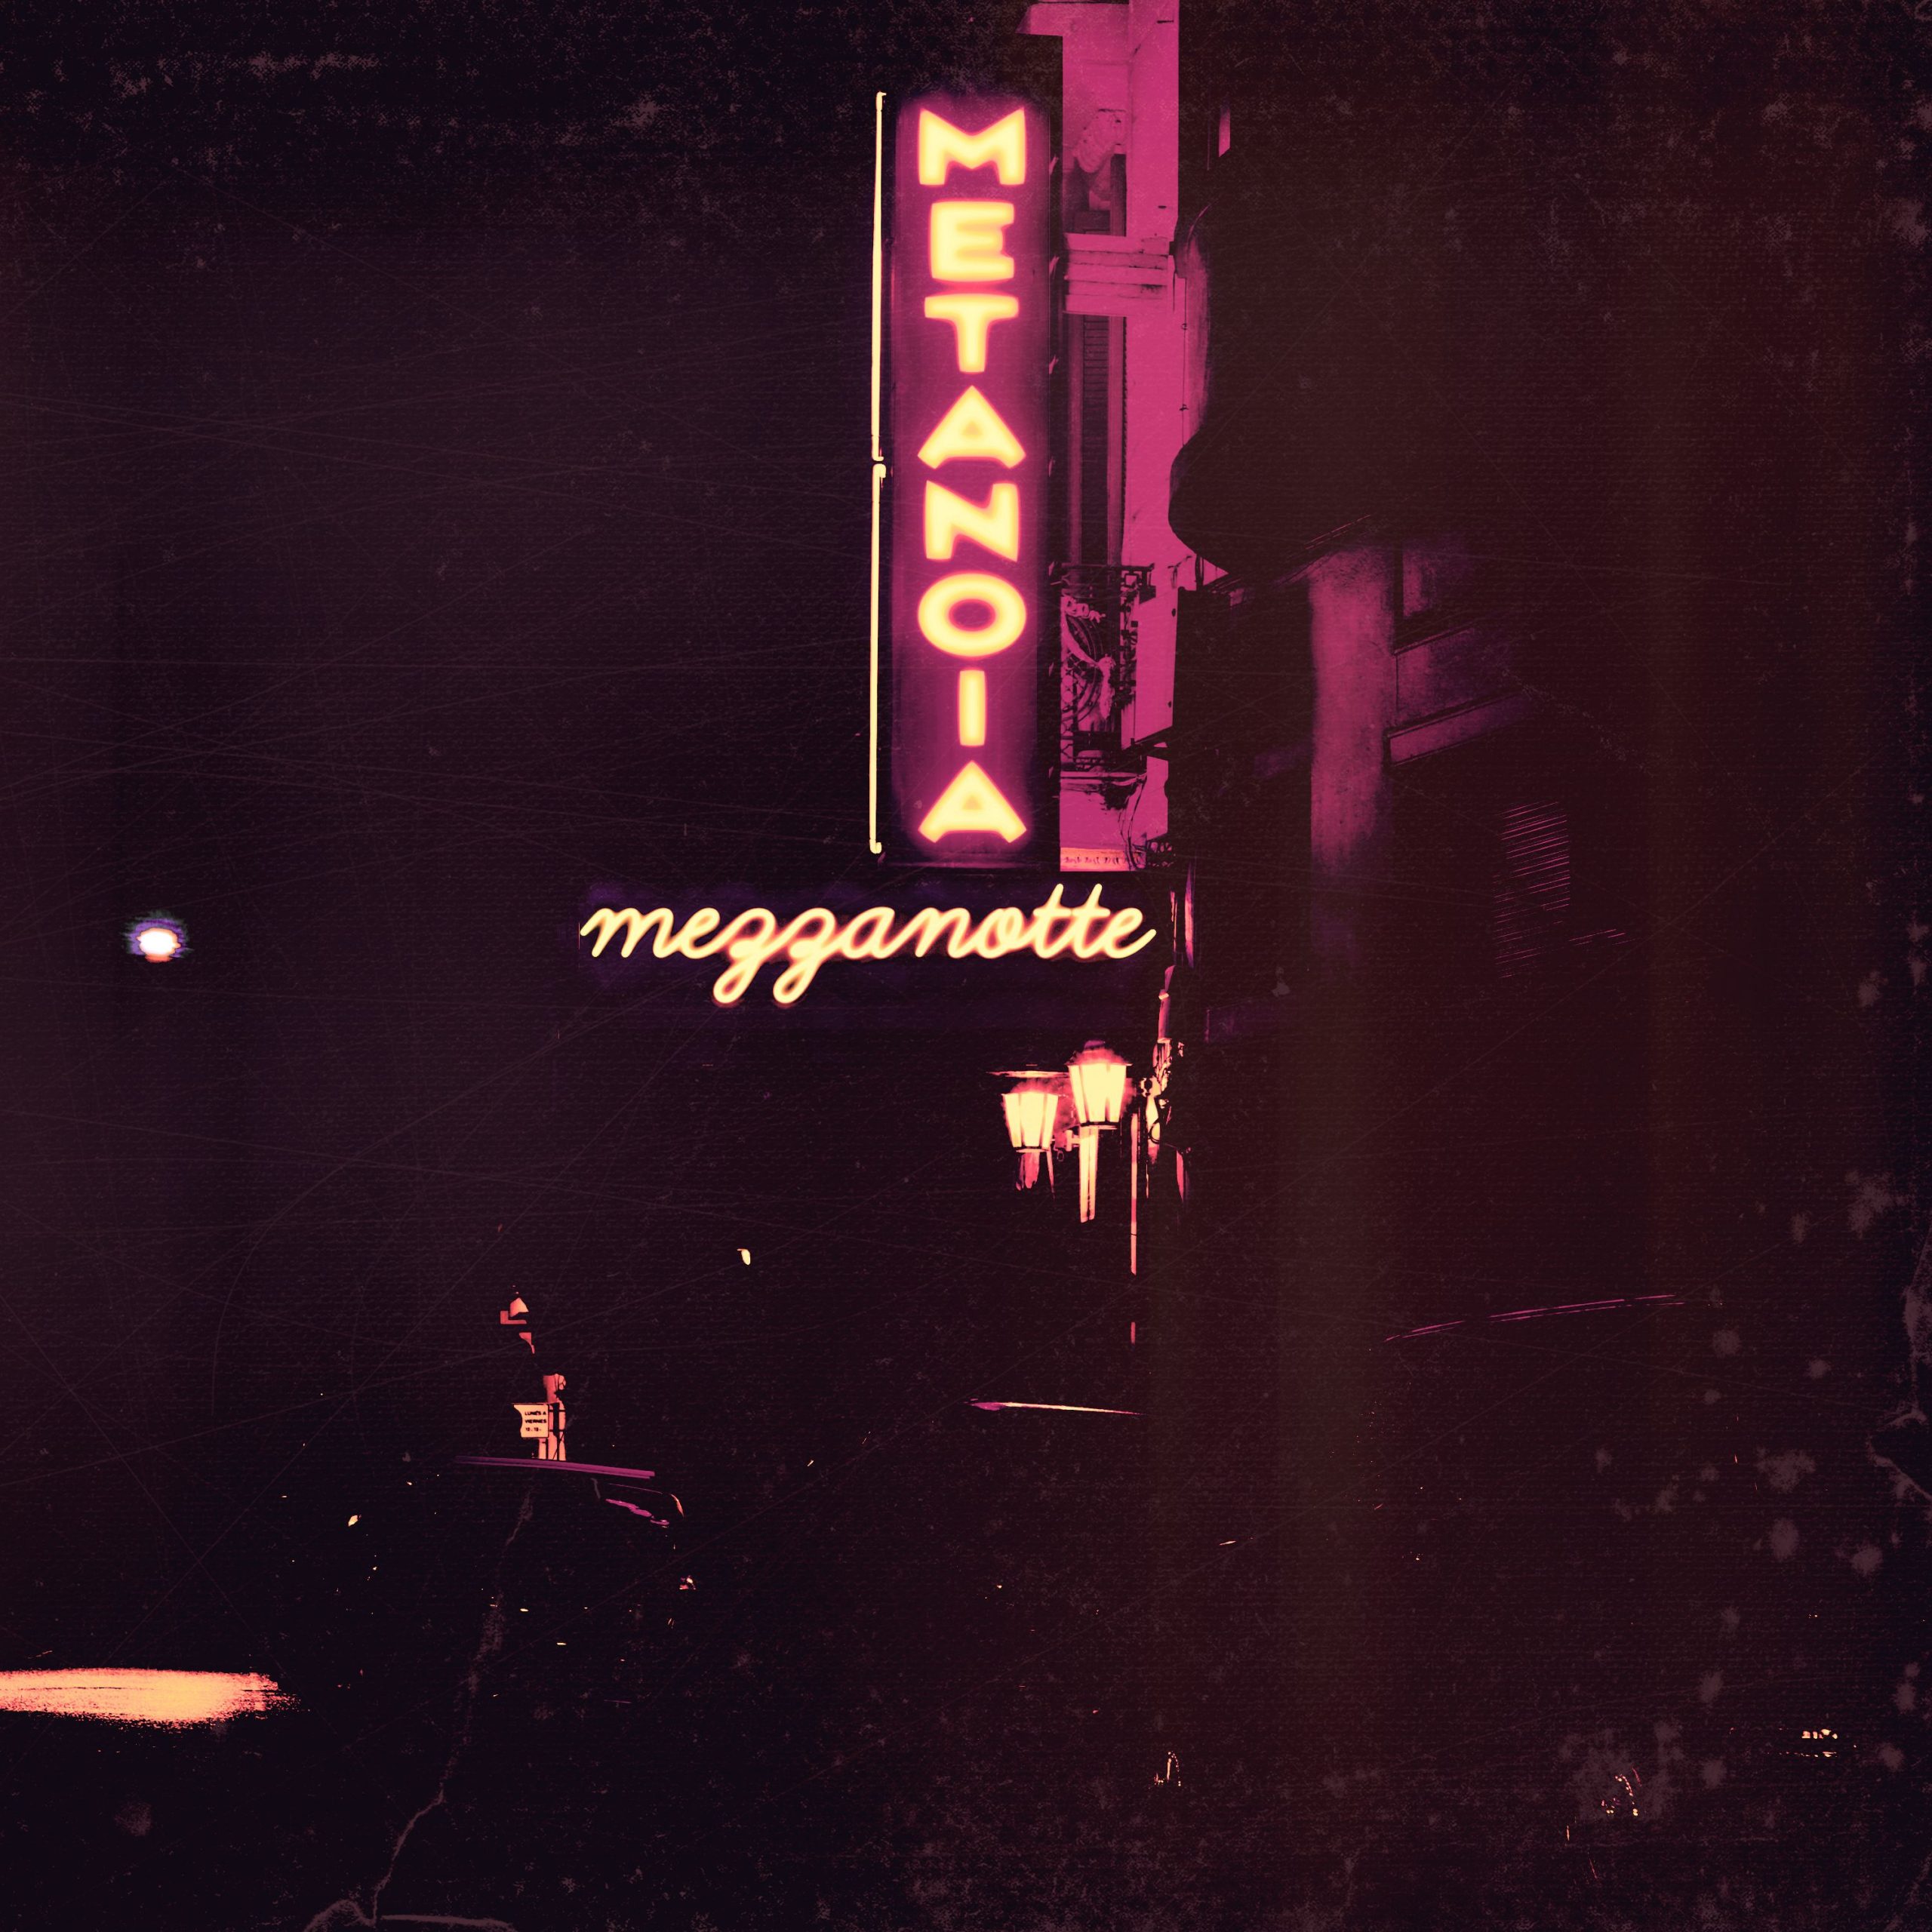 Musica. E’ uscito “Mezzanotte” (Acoustic Version) dei Metanoia, in radio e piattaforme